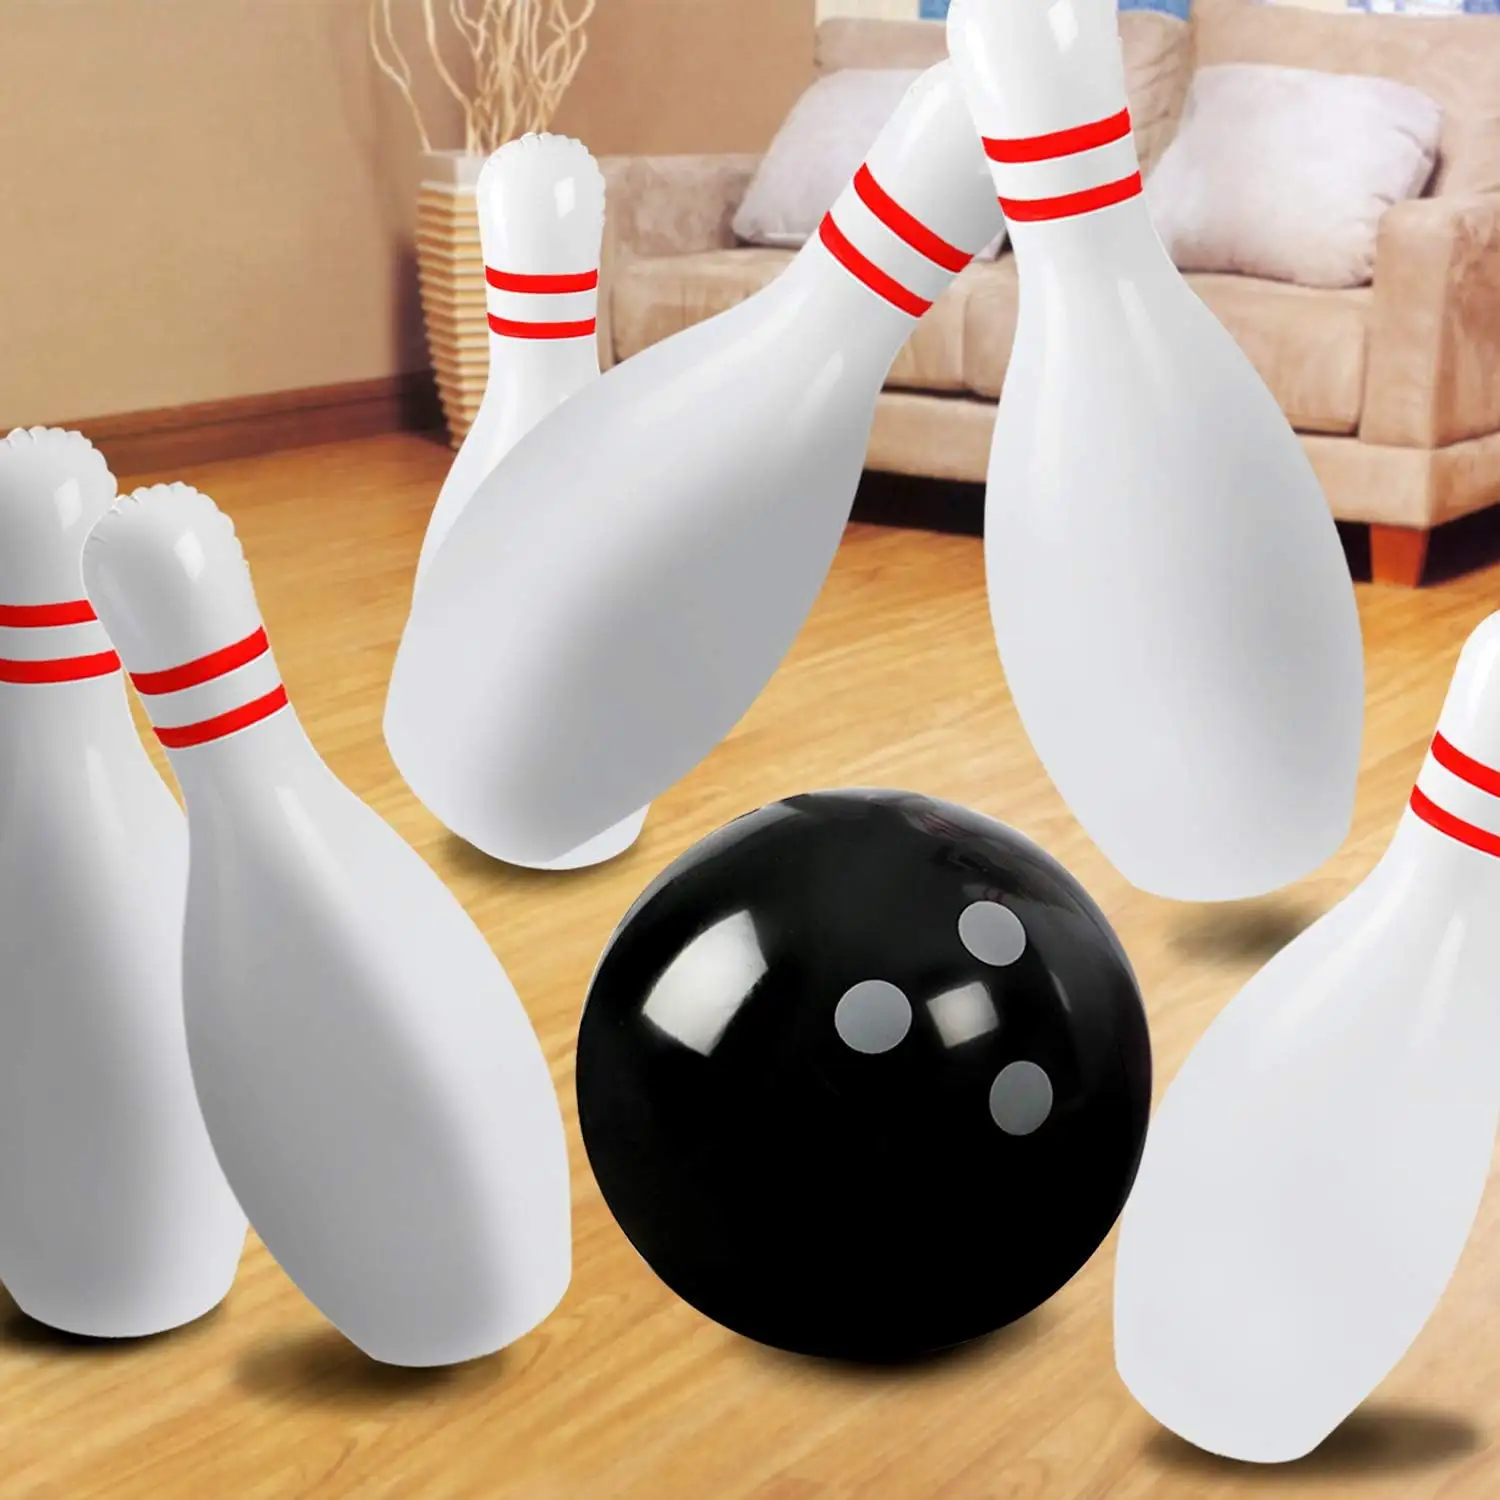 Set Bowling tiup buatan pabrik untuk anak-anak dan dewasa, satu bola 14 inci dengan enam pin 22 inci